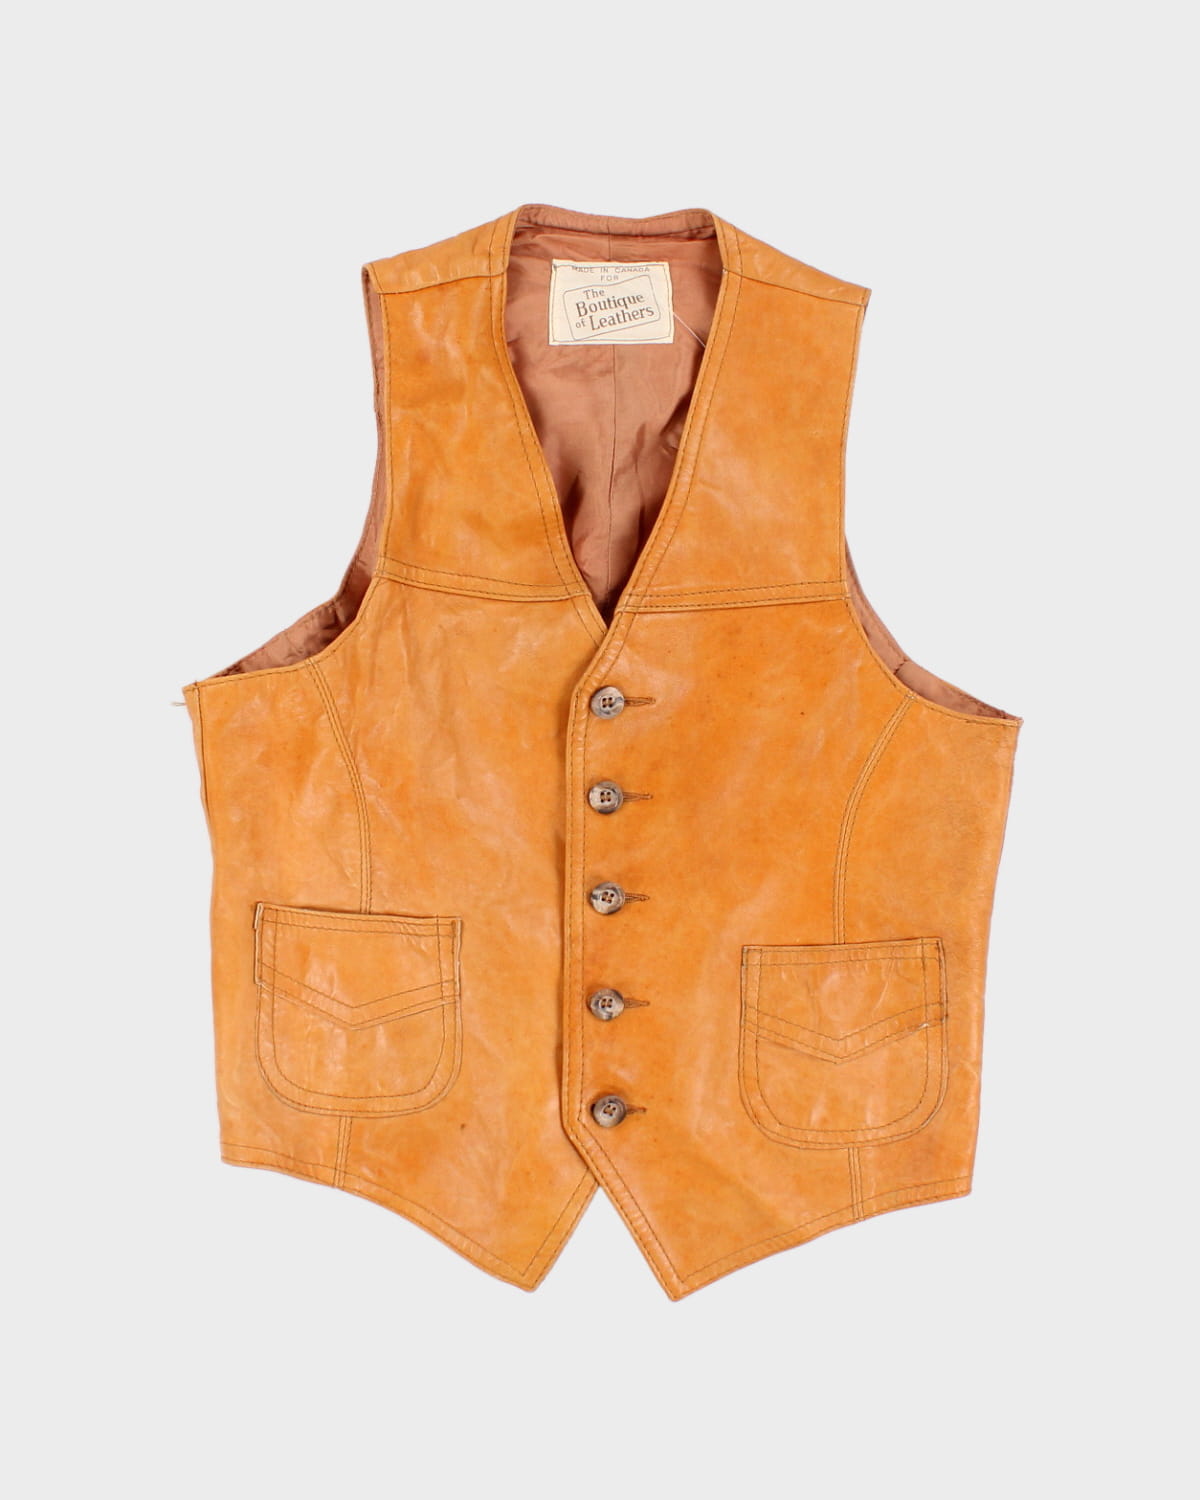 Vintage Camel Leather Vest - M - S